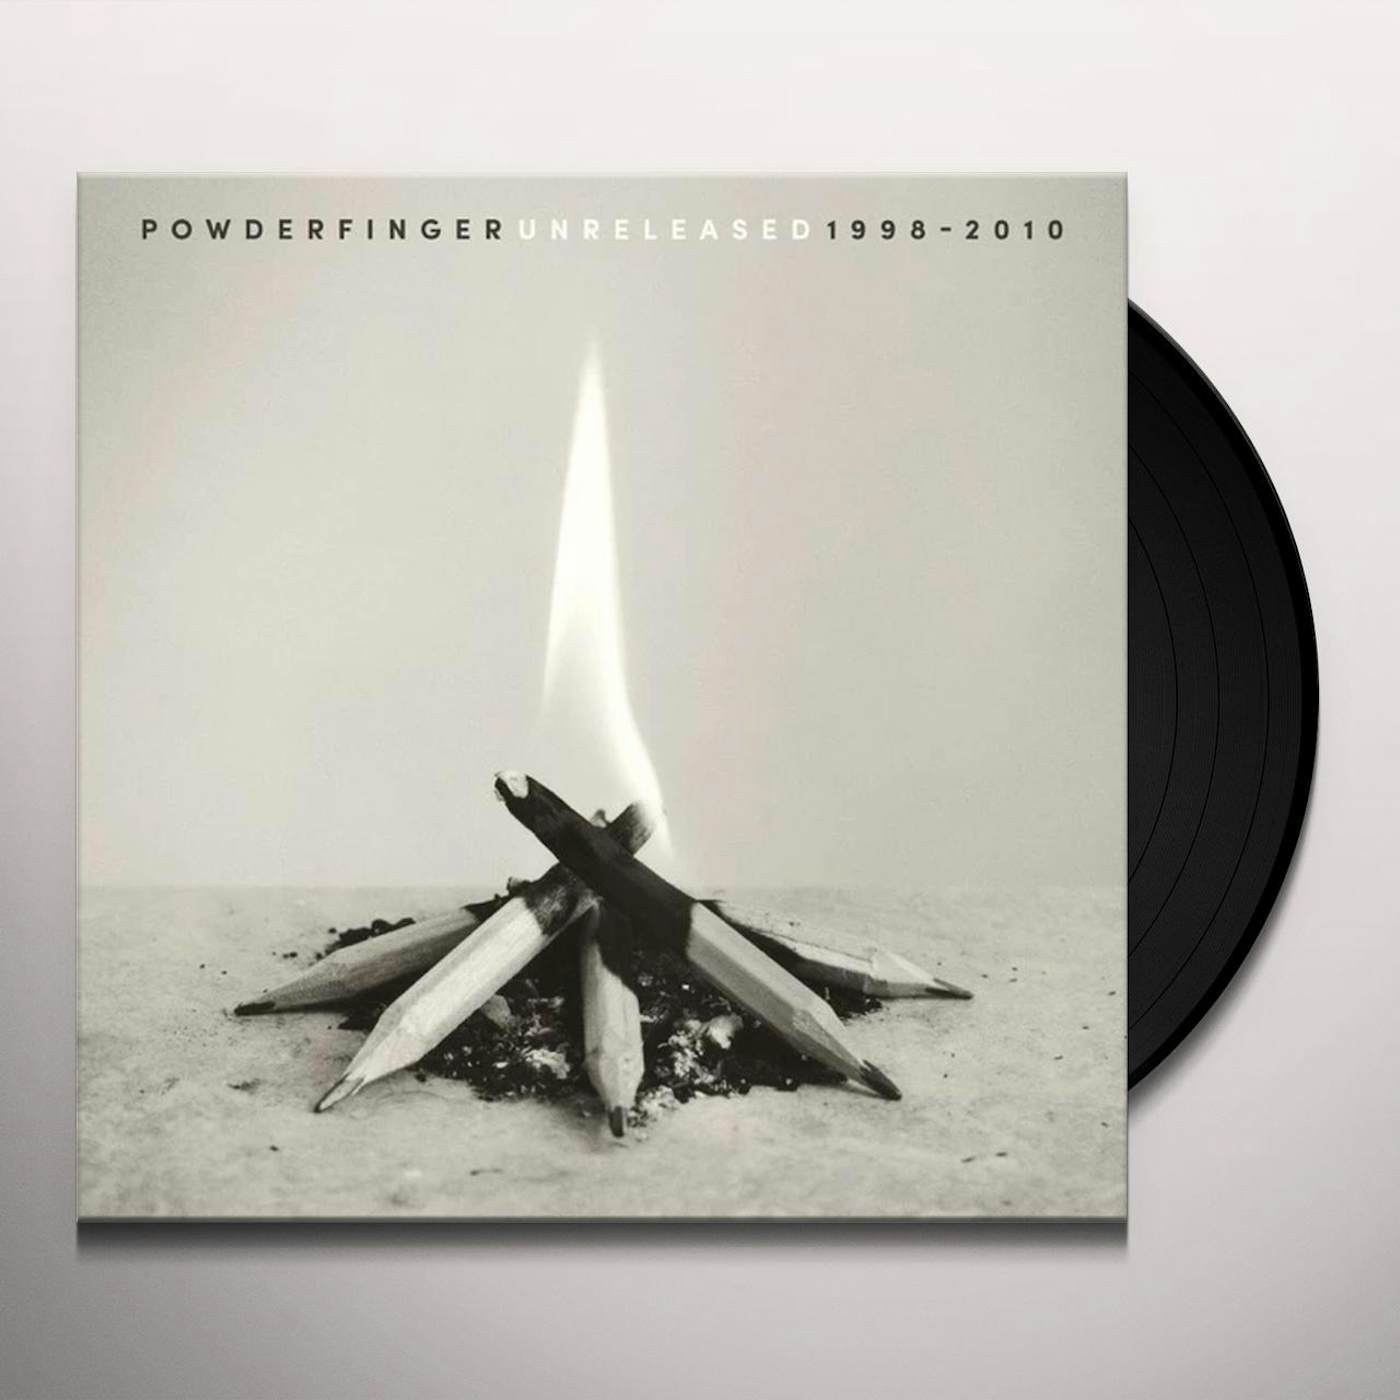 Powderfinger UNRELEASED: 1998-2010 Vinyl Record